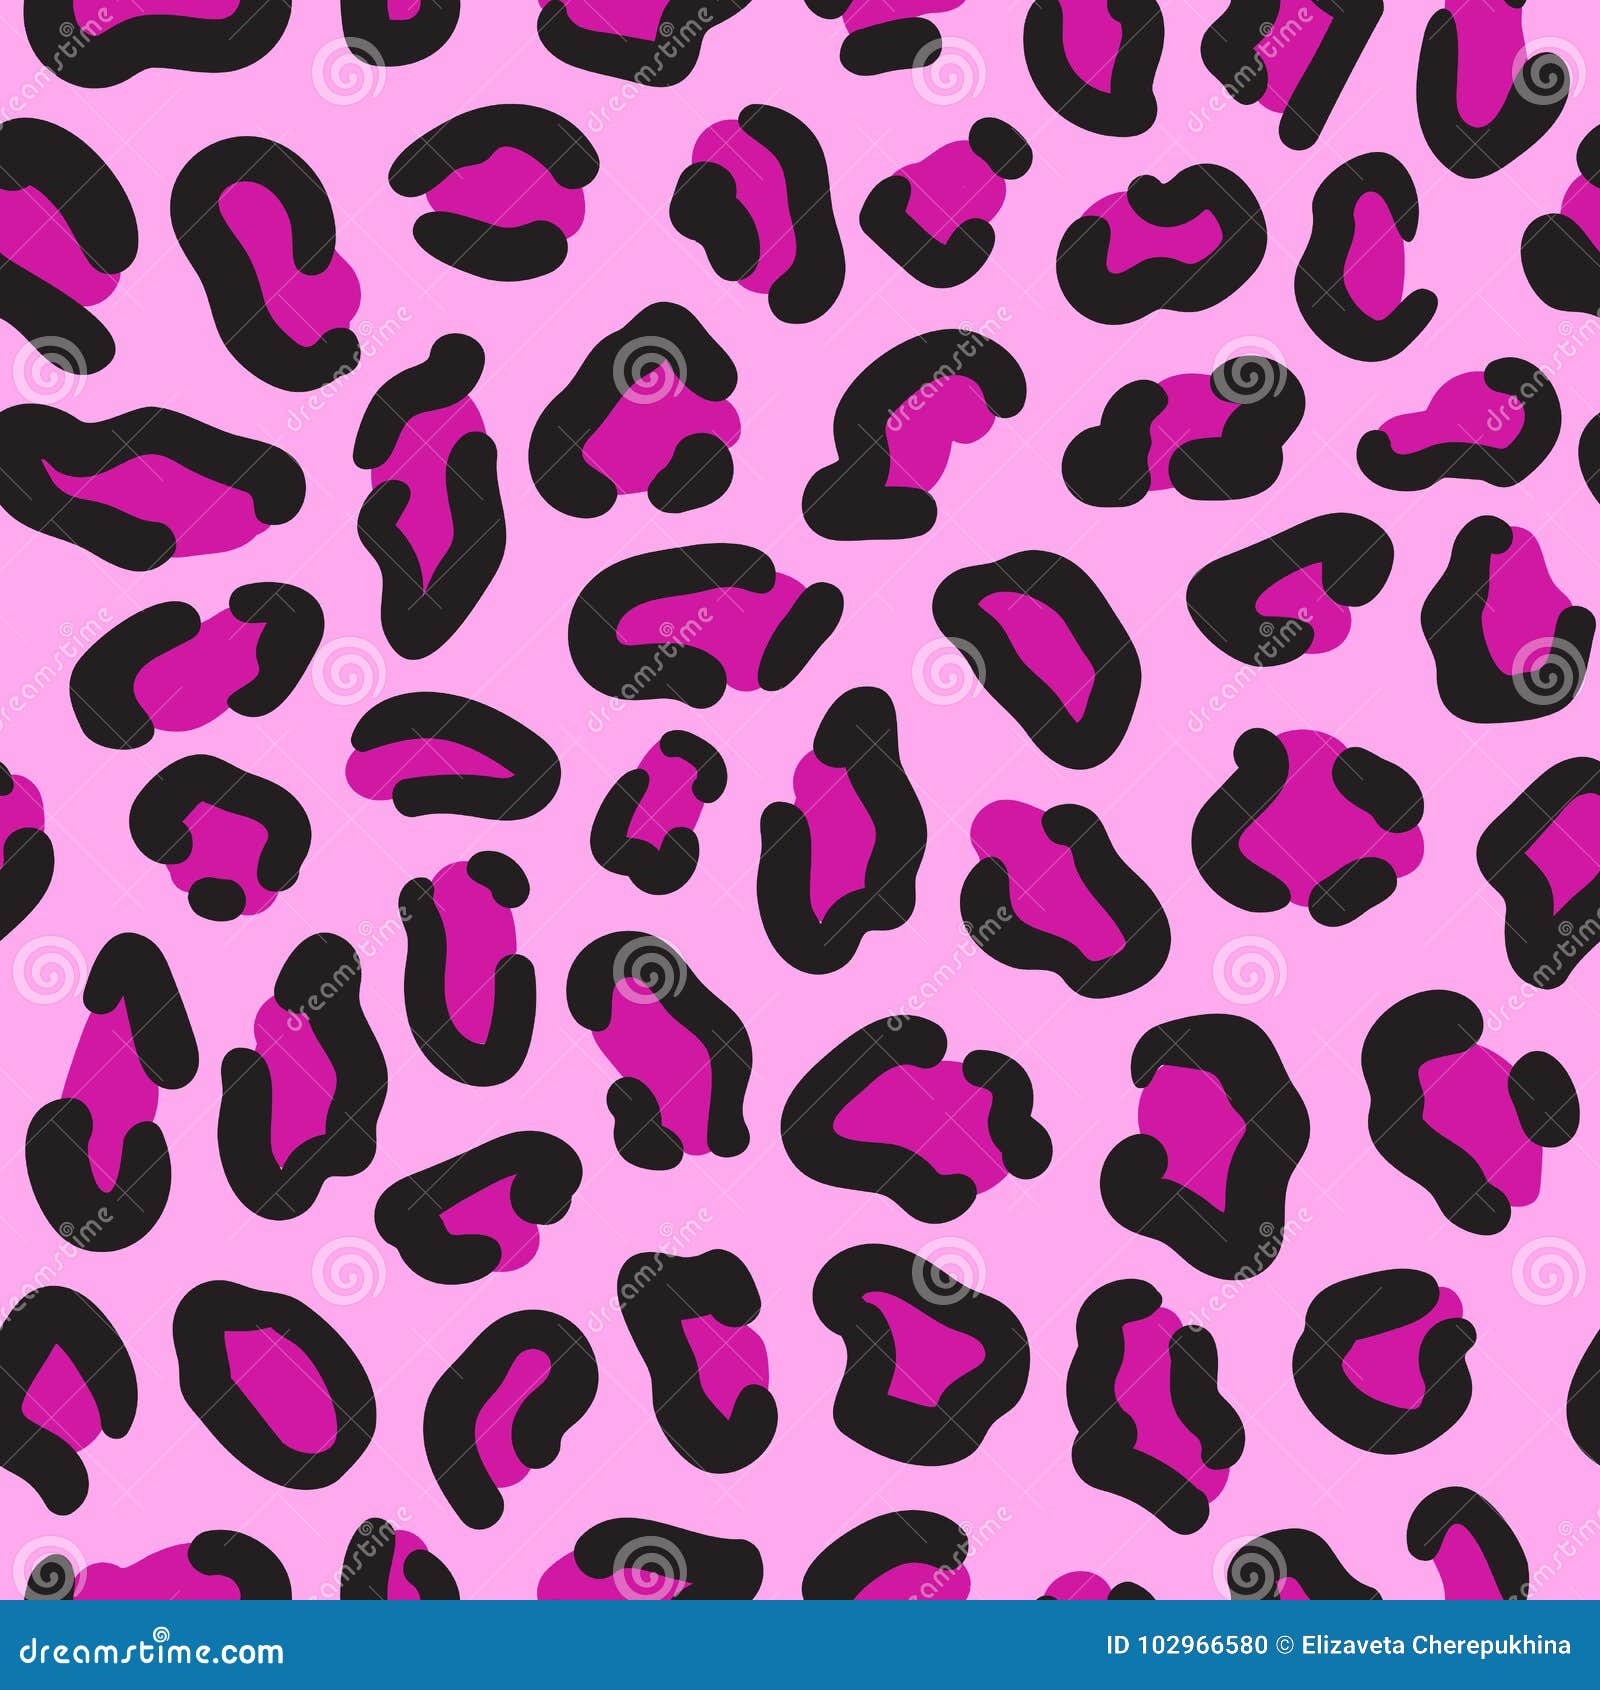 Leopard Seamless Pattern. Leopard Spots. Fashion Cheetah Print